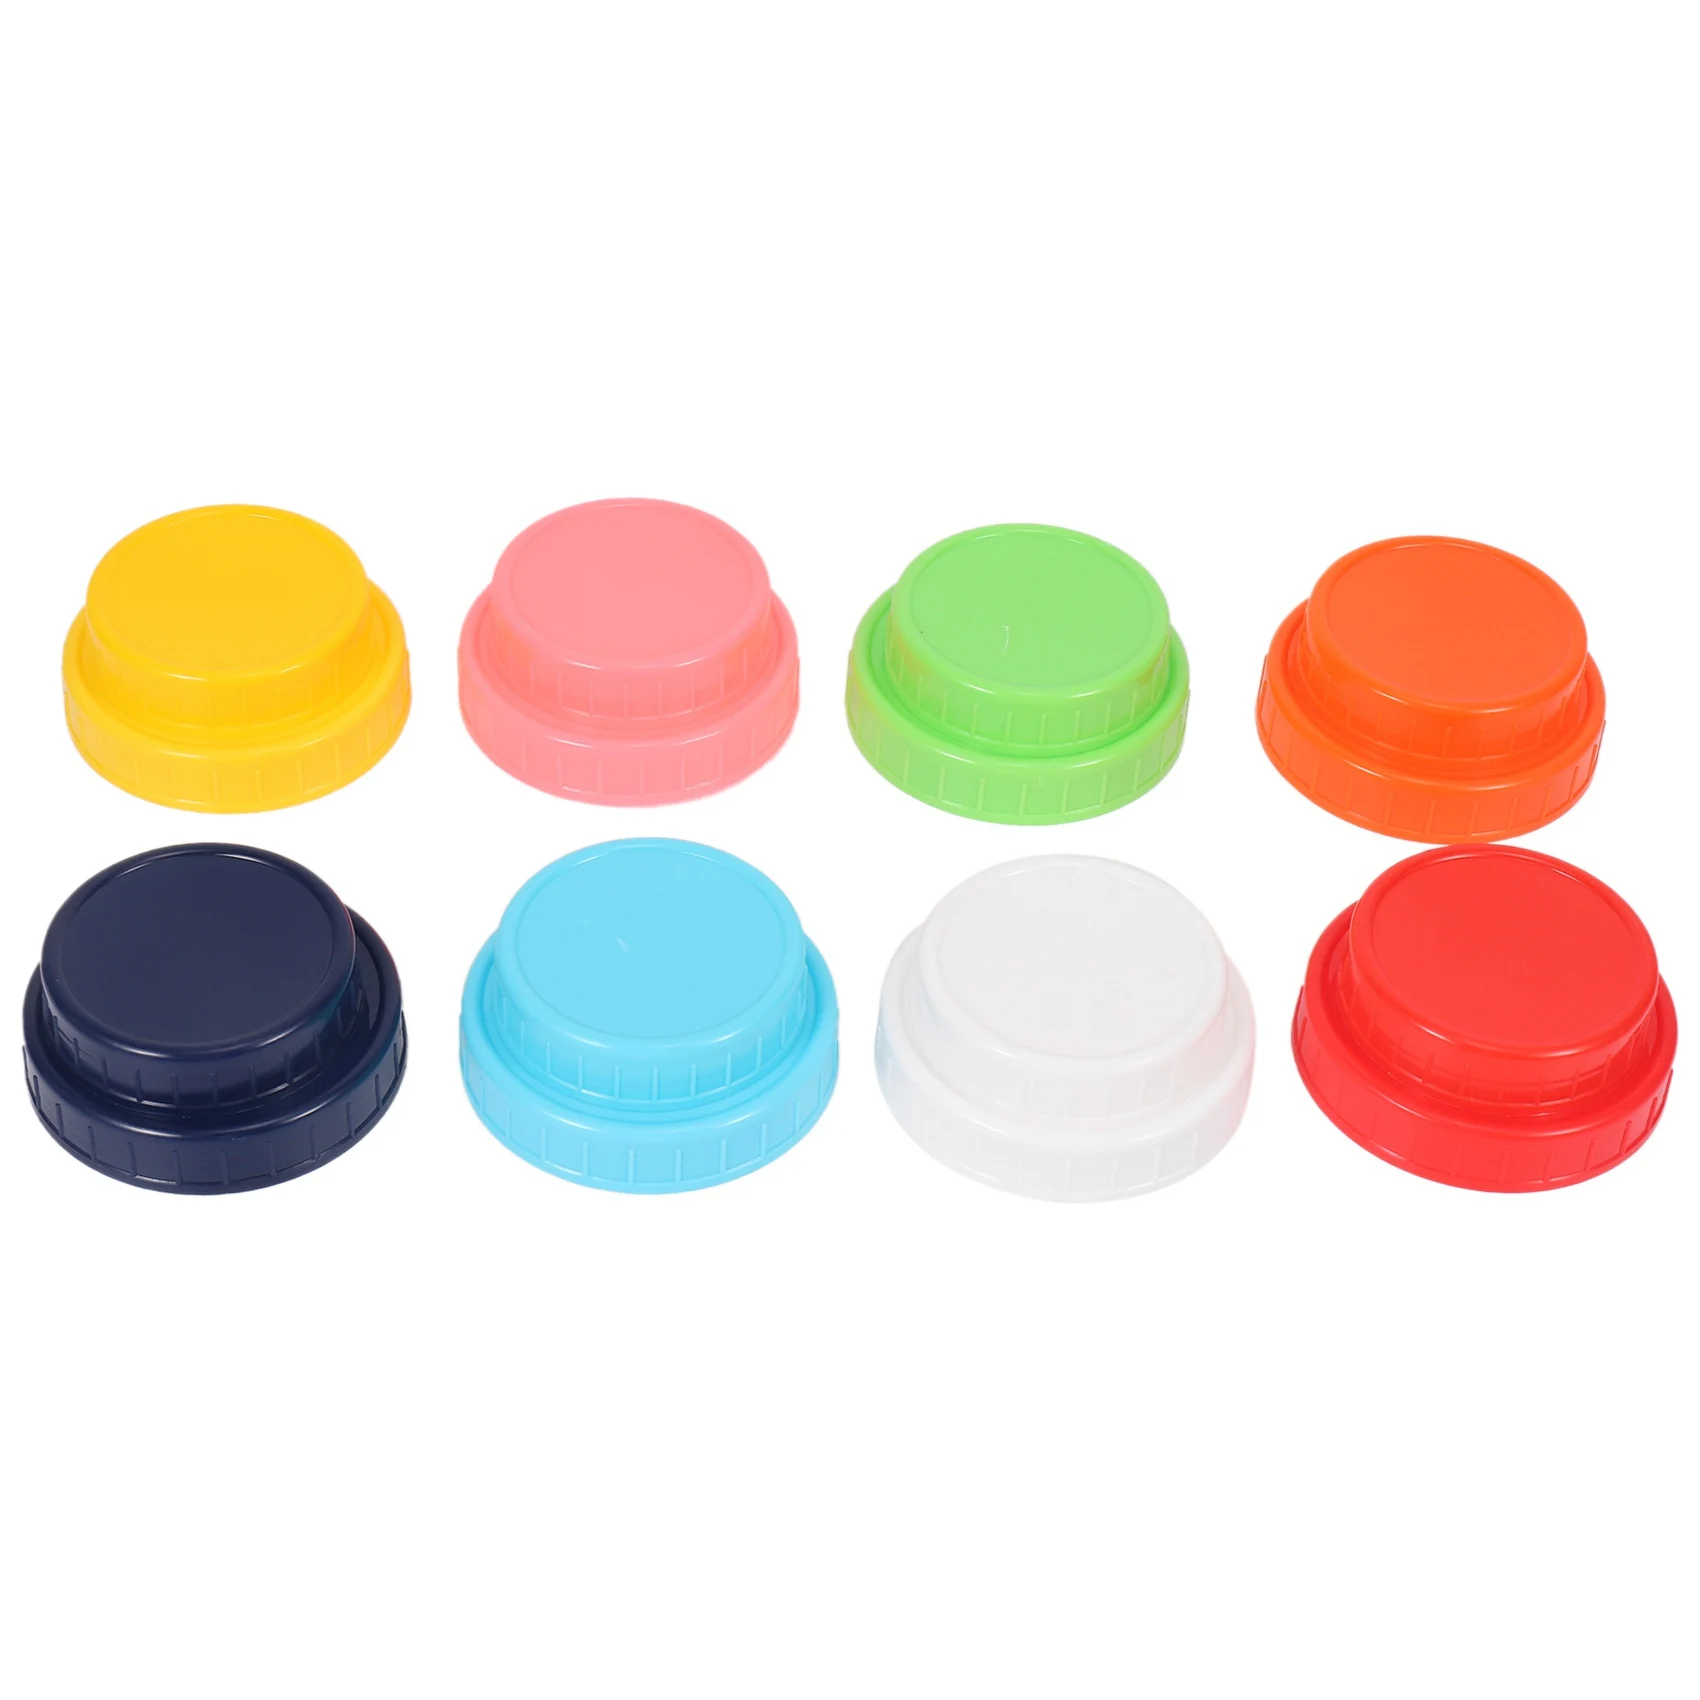 

16 упаковок цветных пластиковых крышек для банок-8 широких горлышек и 8 обычных крышек для банок, противоскользящие крышки для хранения продуктов